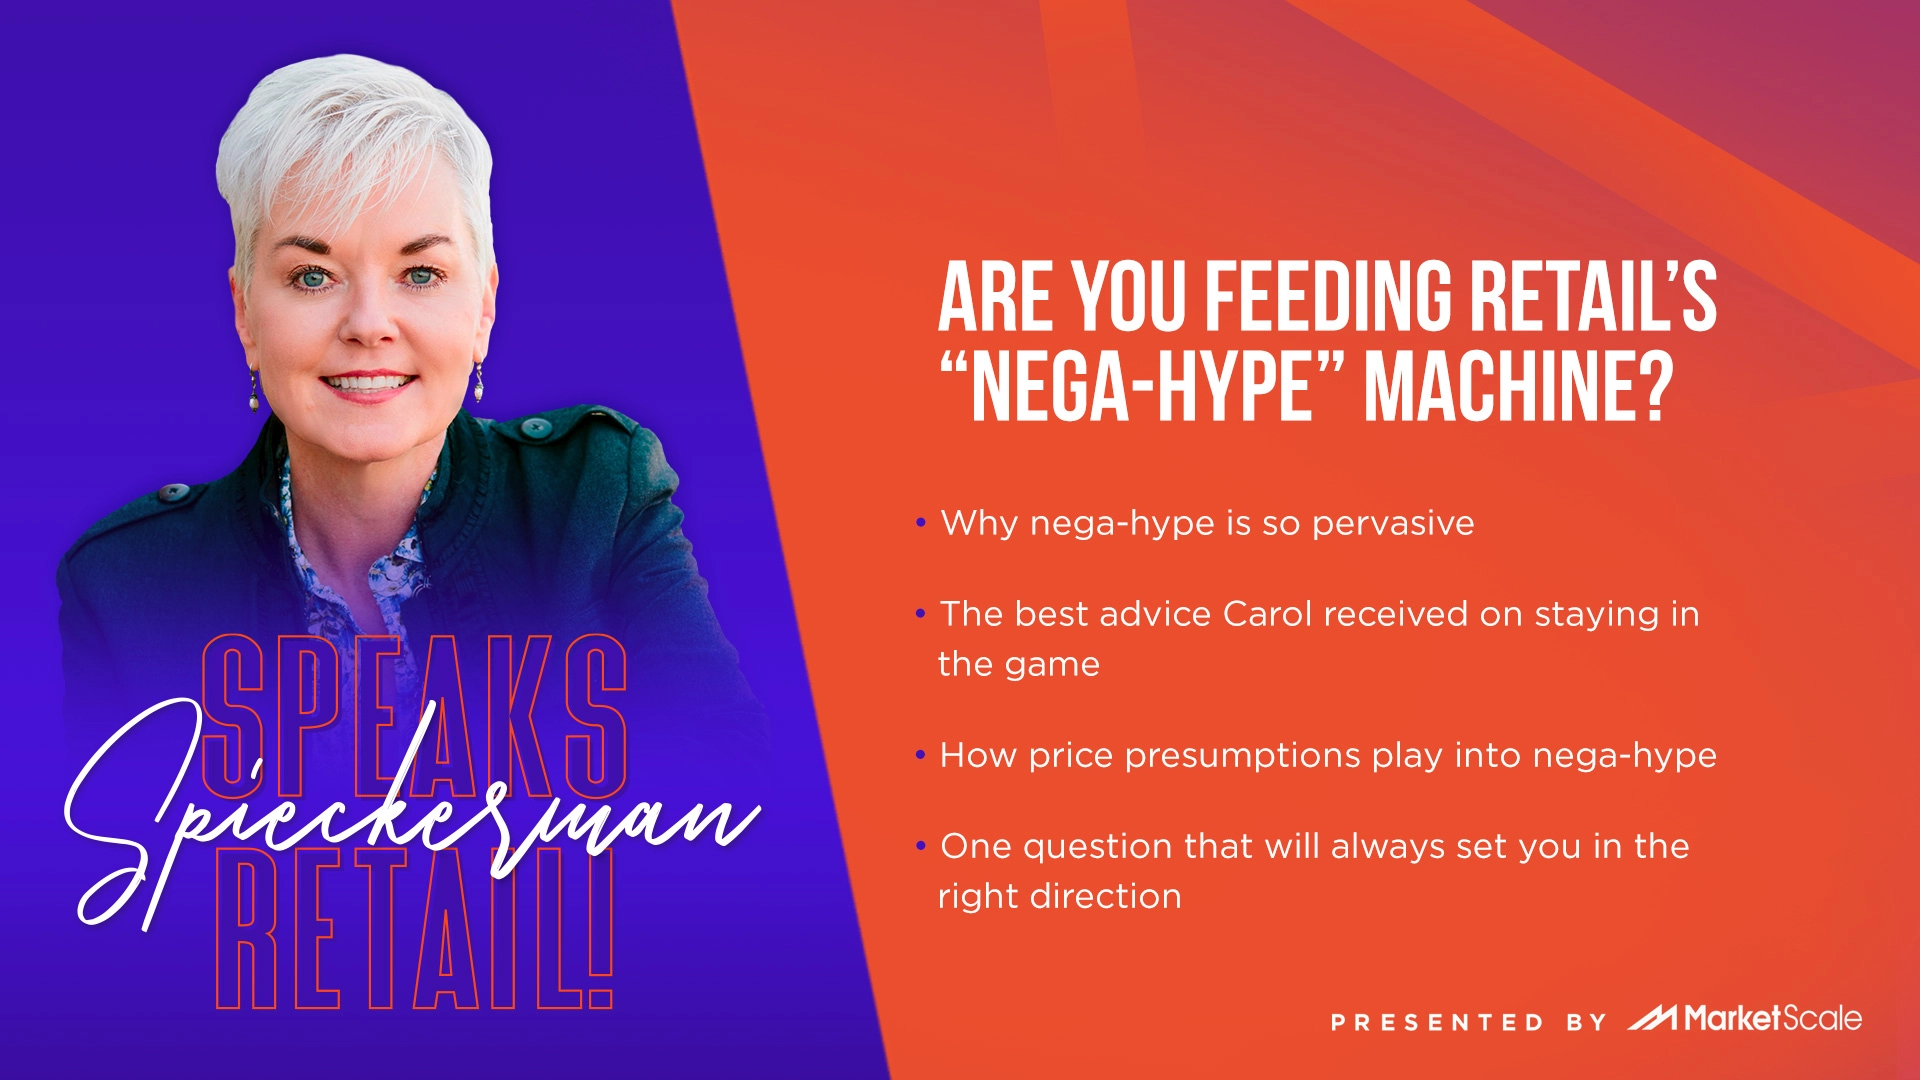 Are you Feeding Retail’s “Nega-hype” Machine?